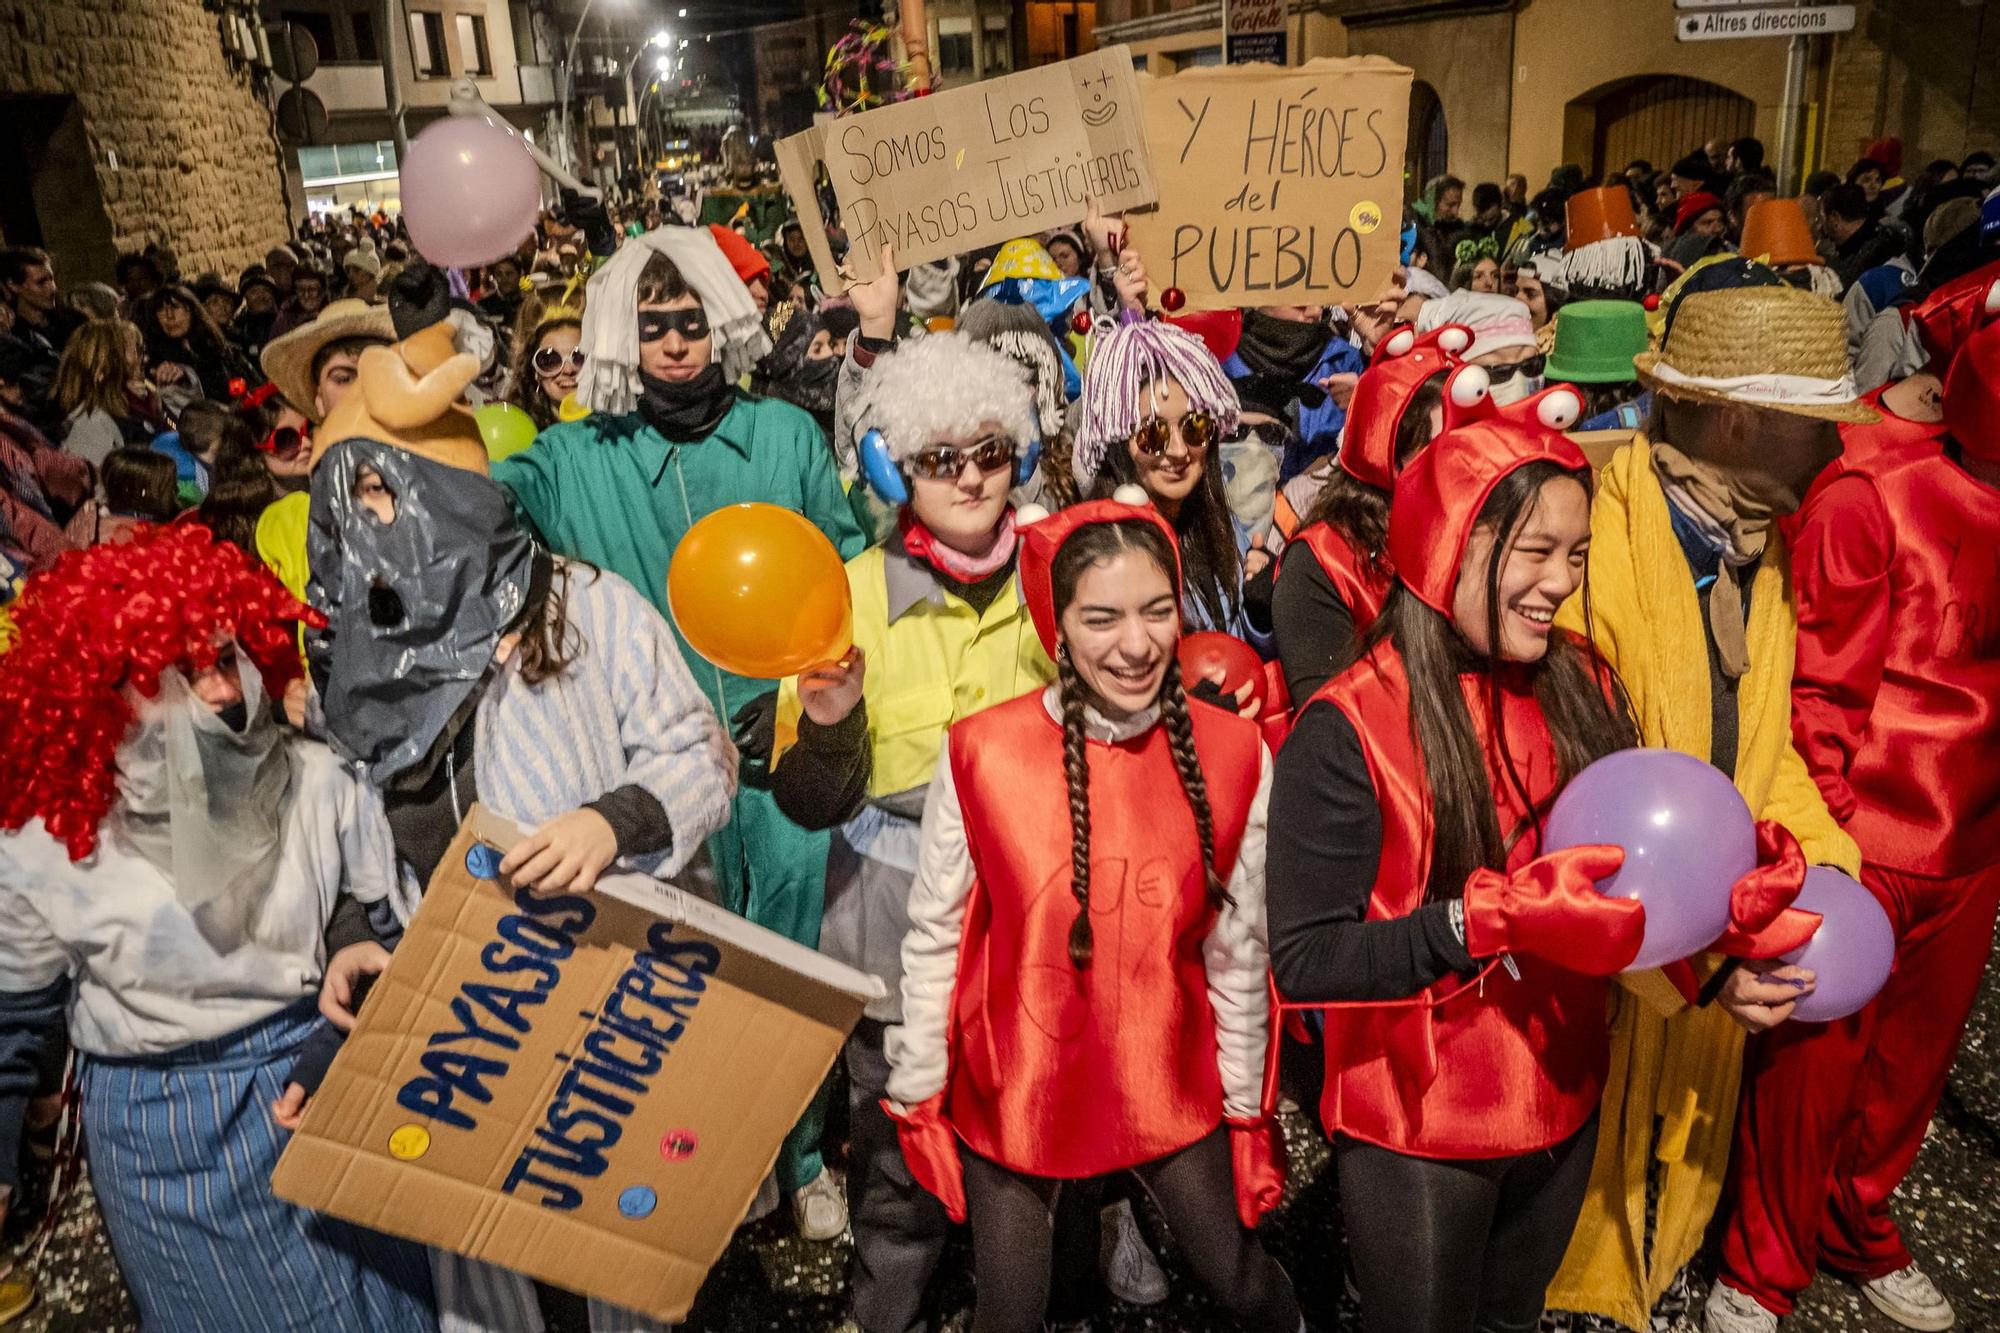 Busca't a les imatges del Carnaval de Solsona d'aquest dissabte